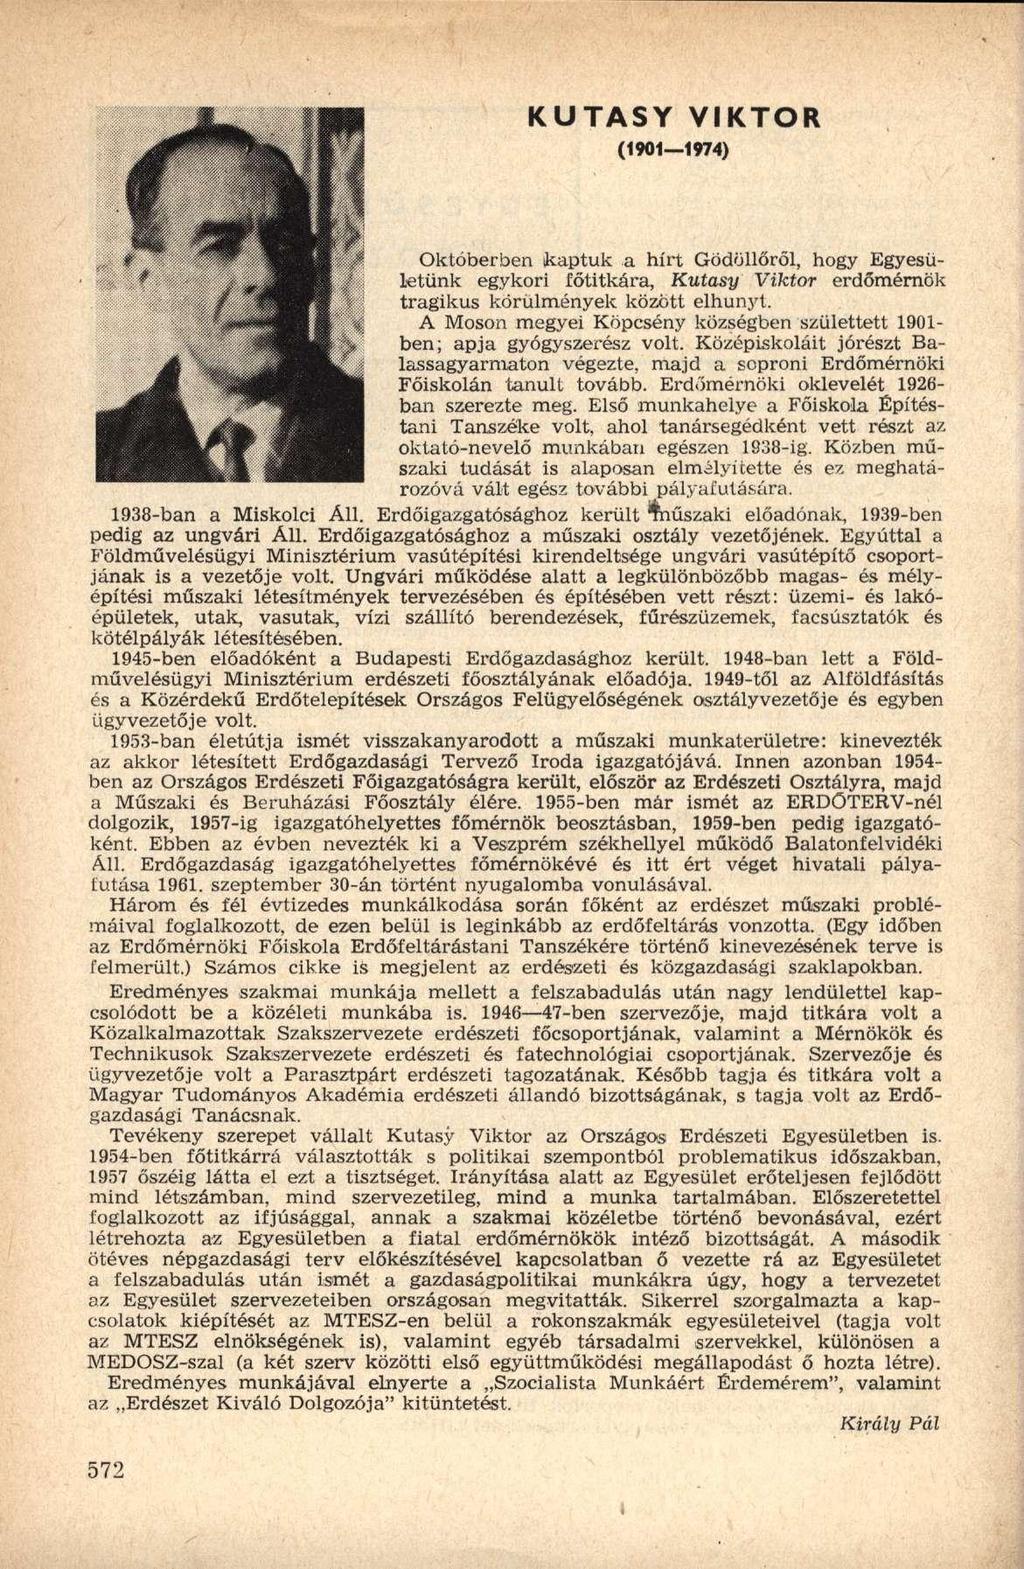 KUTASY (1901 1974) VIKTOR Októberben ikaptuk a hírt Gödöllőről, hogy Egyesületünk egykori főtitkára, Kutasy Viktor erdőmérnök tragikus körülmények között elhunyt.